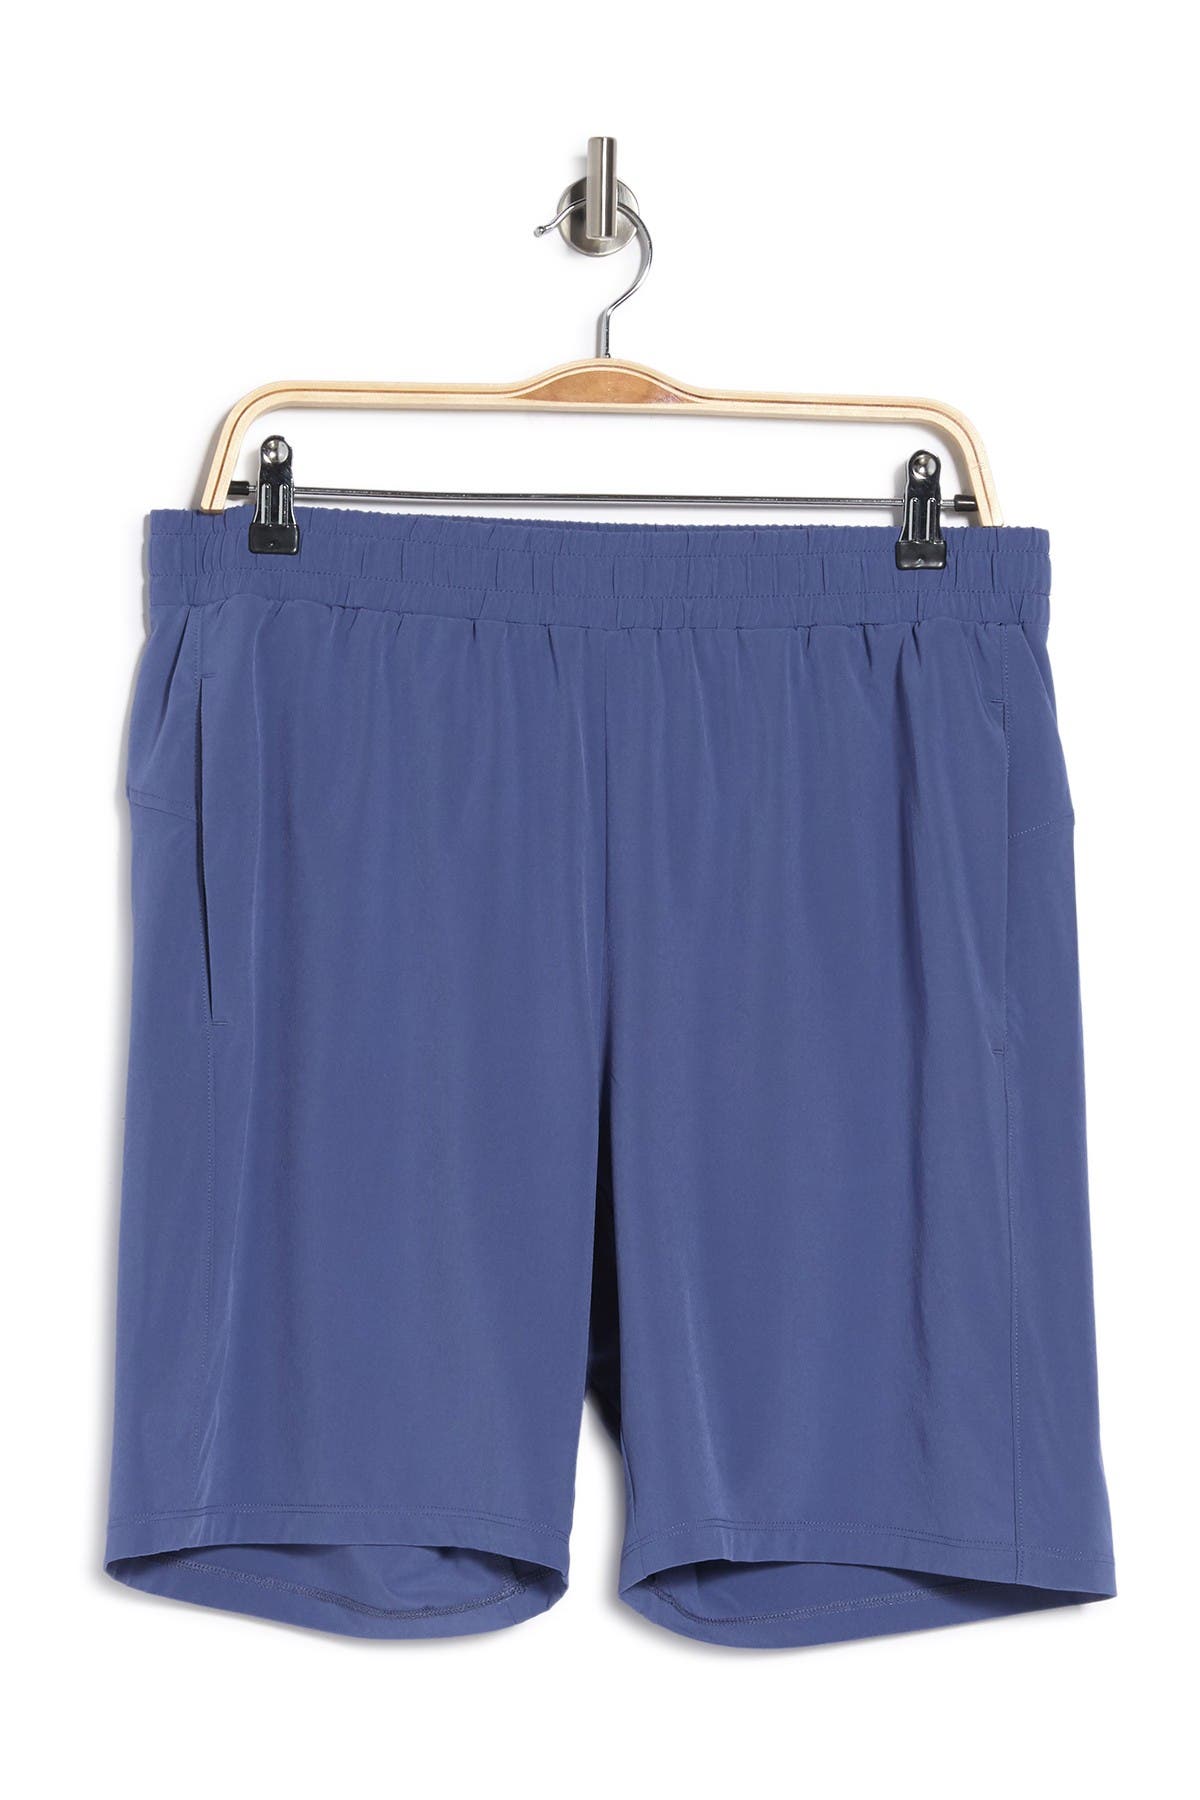 Z By Zella Traverse Woven Shorts In Blue Angelite